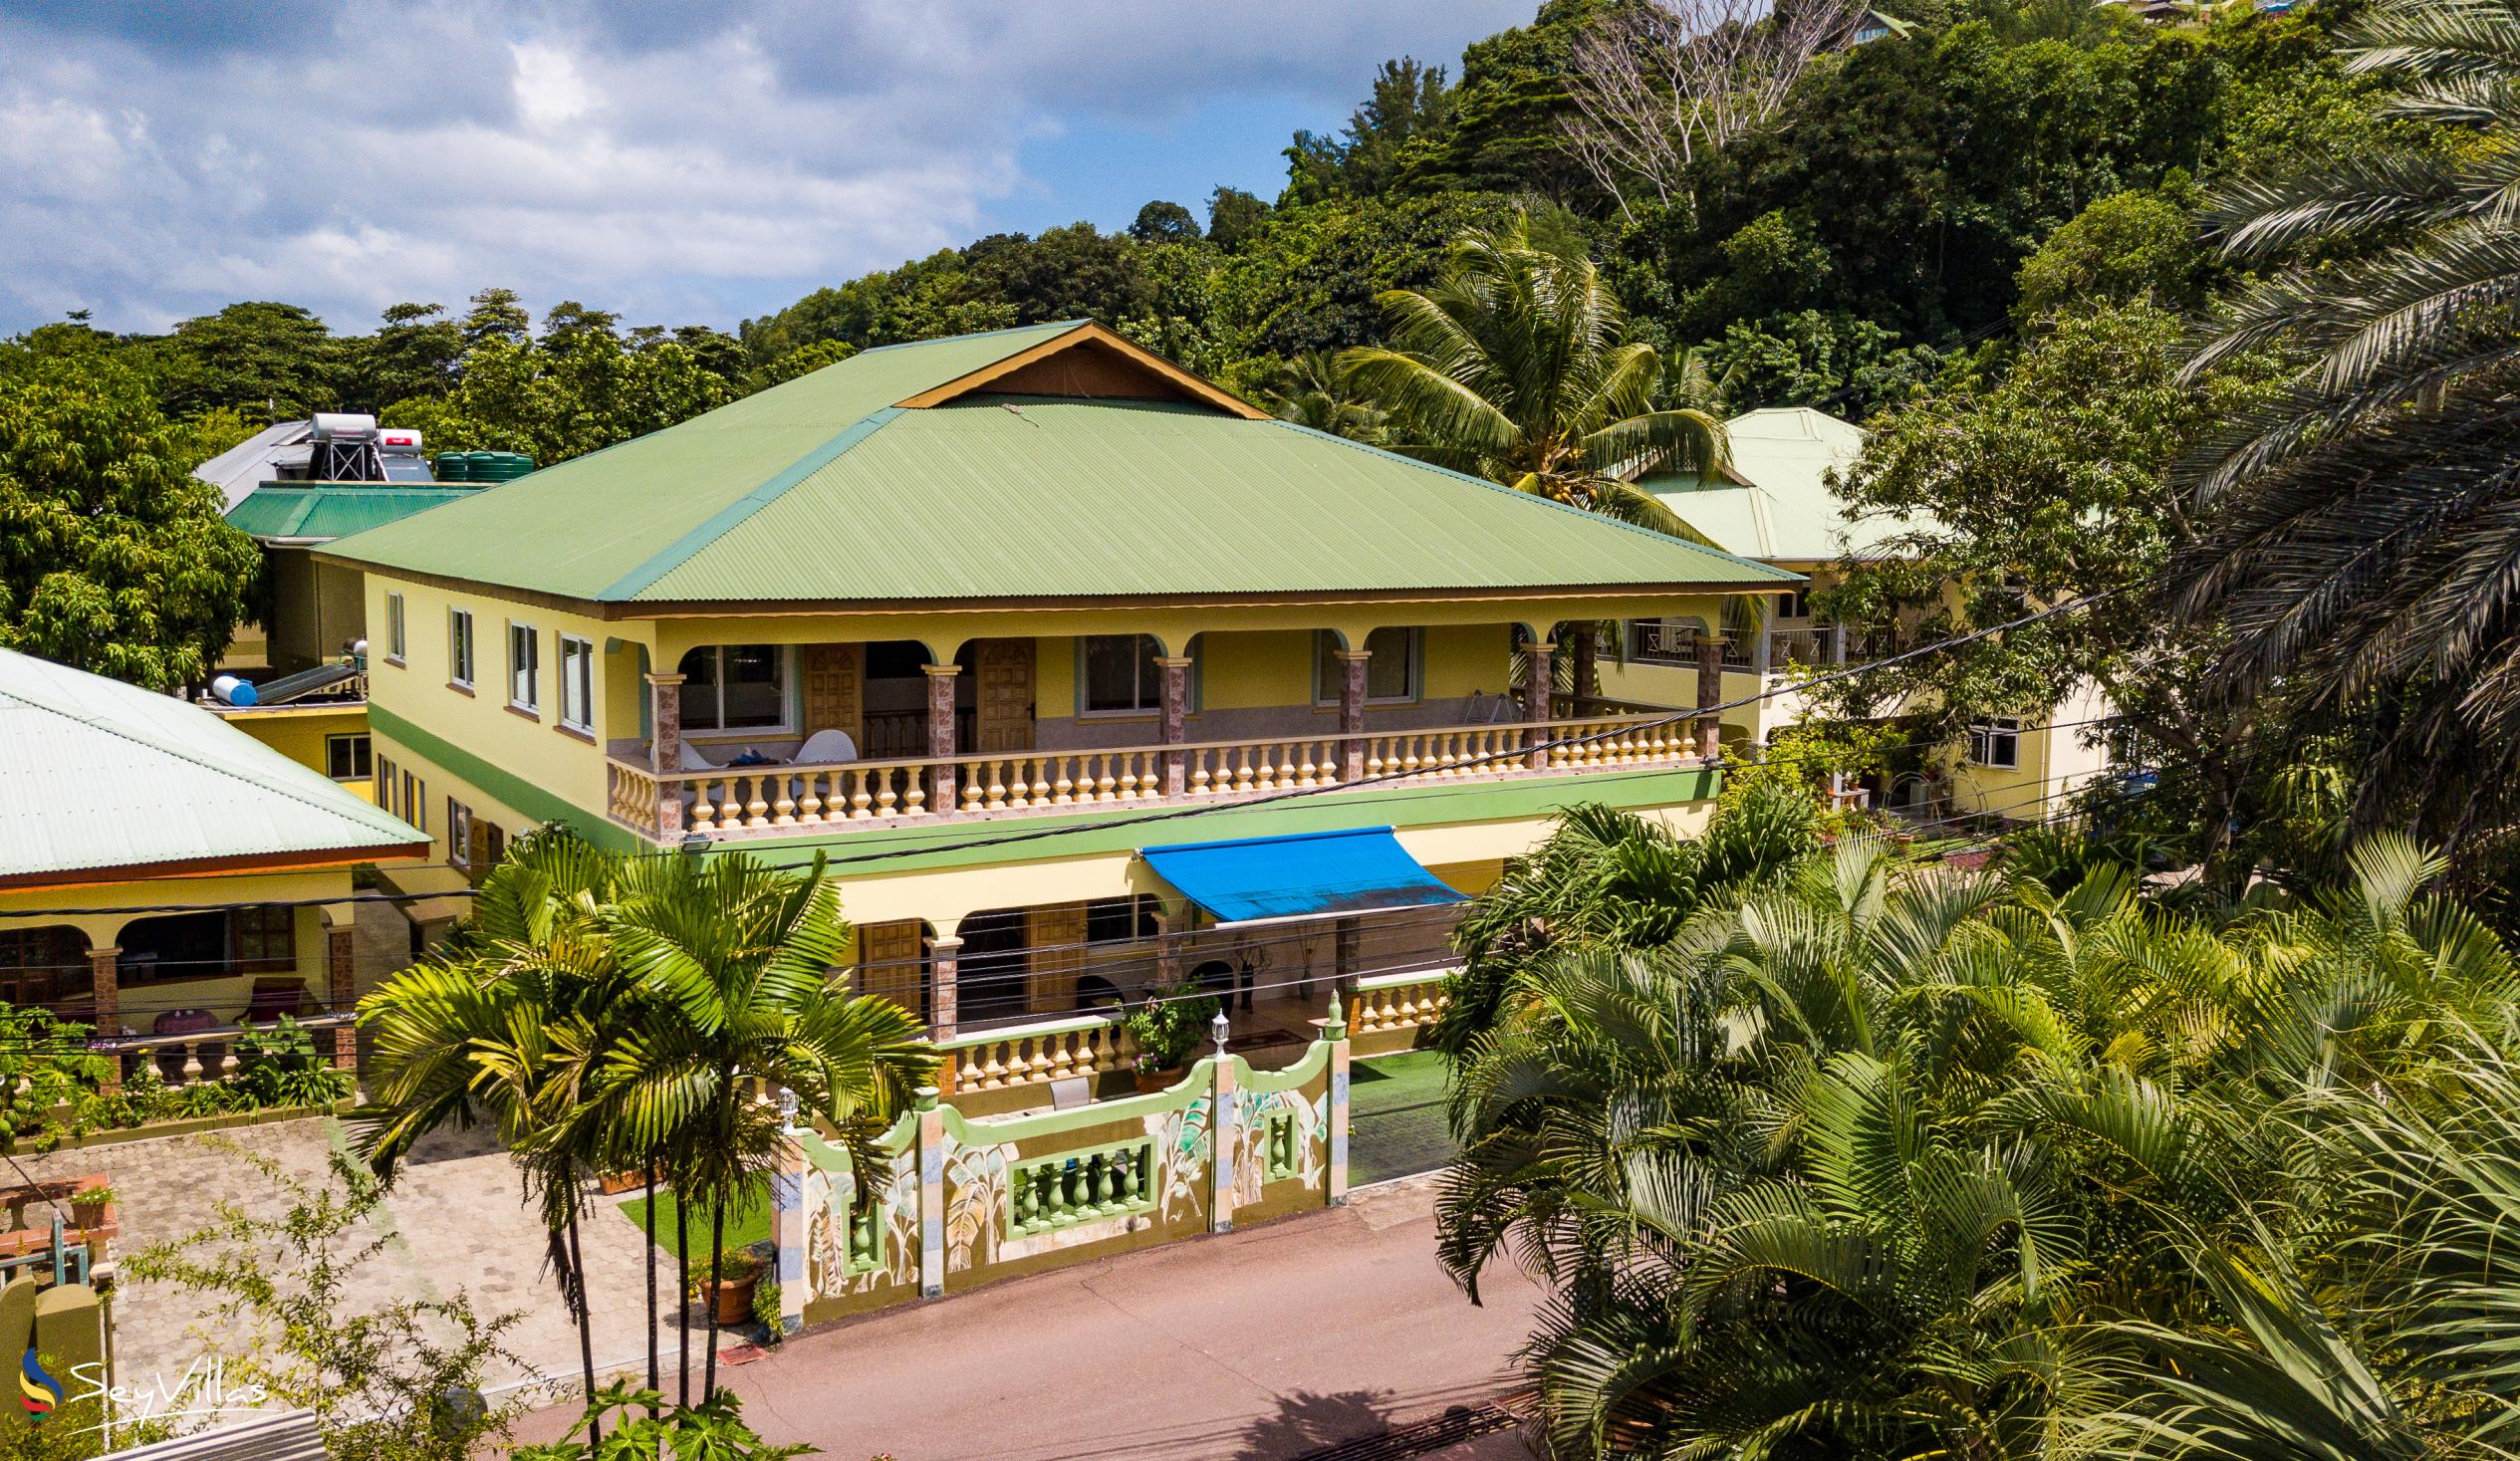 Foto 24: Villa Bananier - Aussenbereich - Praslin (Seychellen)